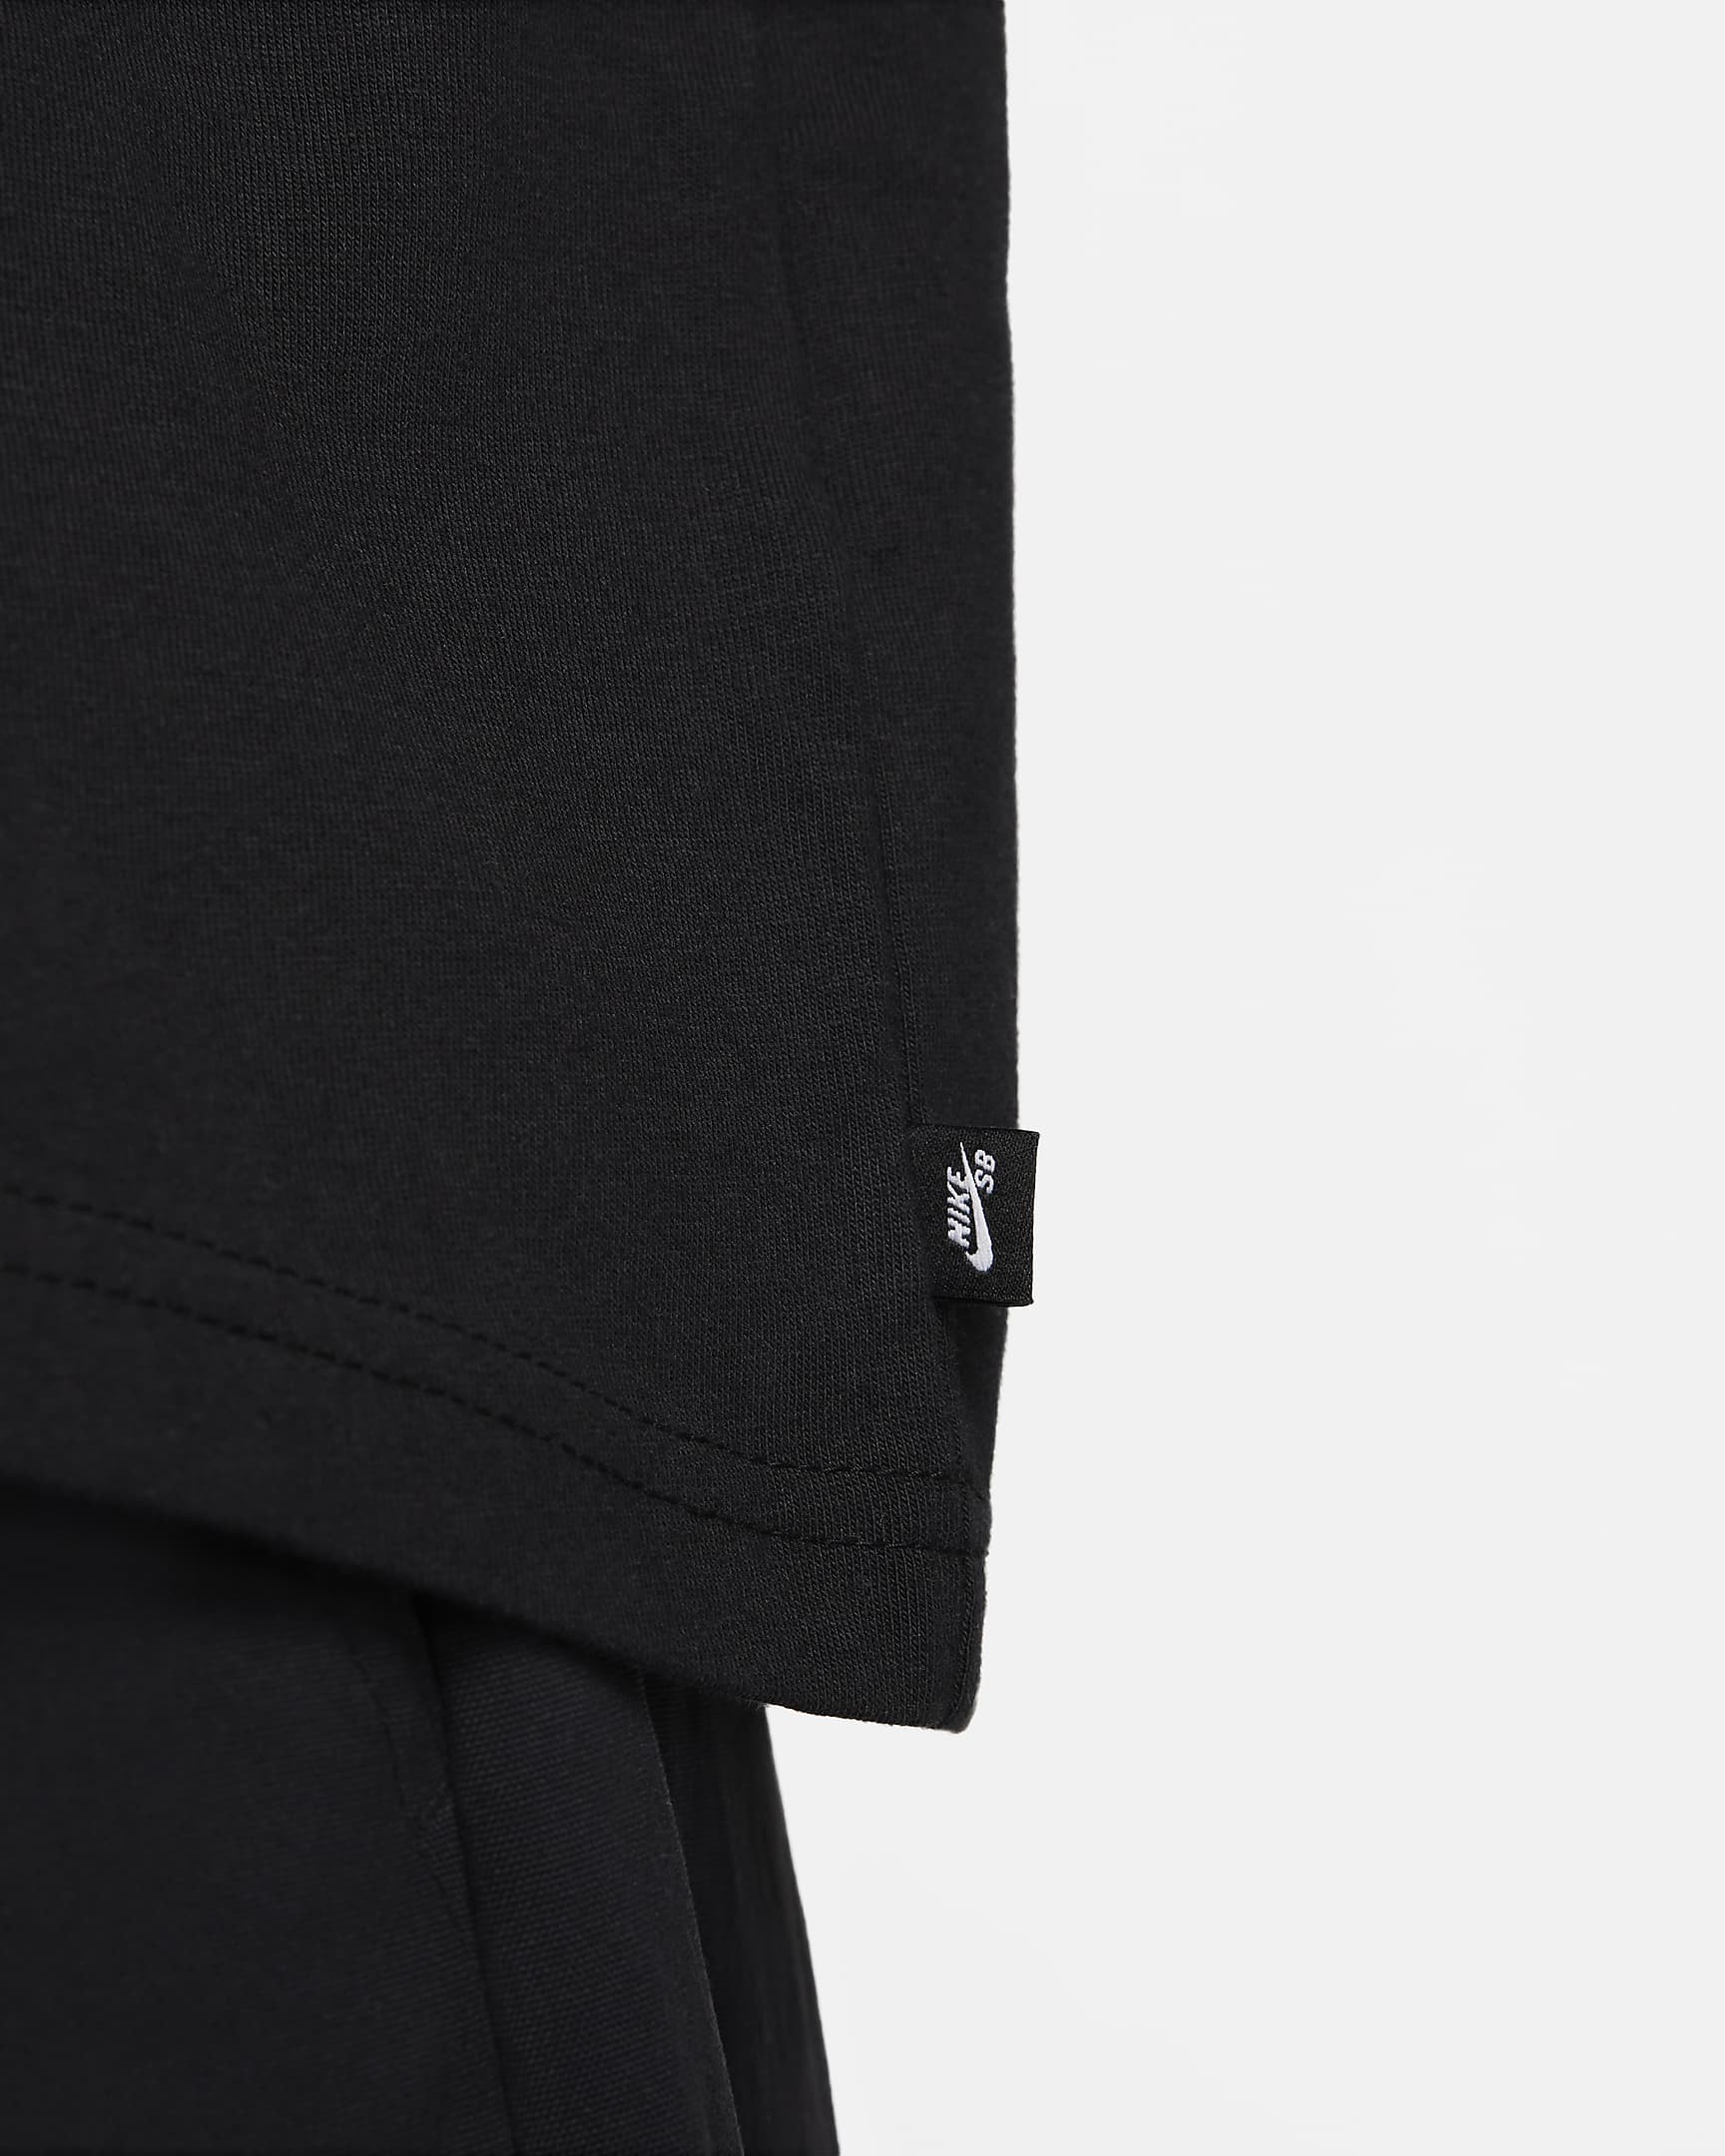 Nike SB Skate Short Sleeve T-Shirt - Black Mosaic